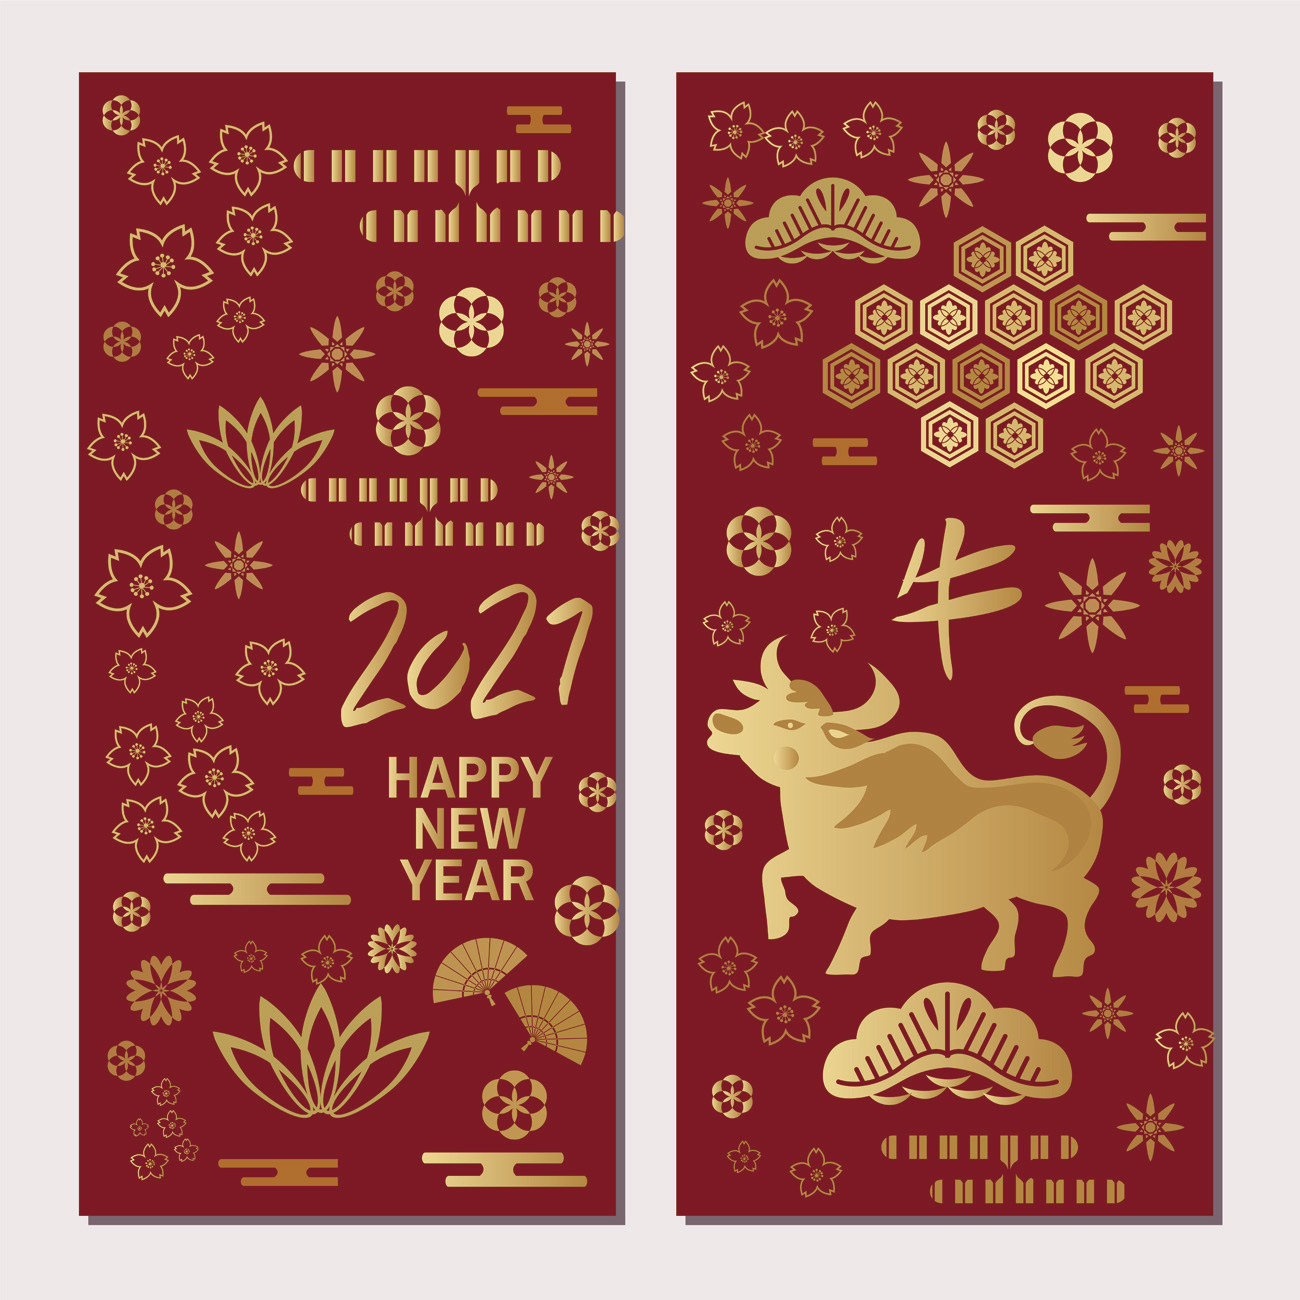 2021年东方中国牛年新年快乐红包封面矢量模板矢量竖向横幅素